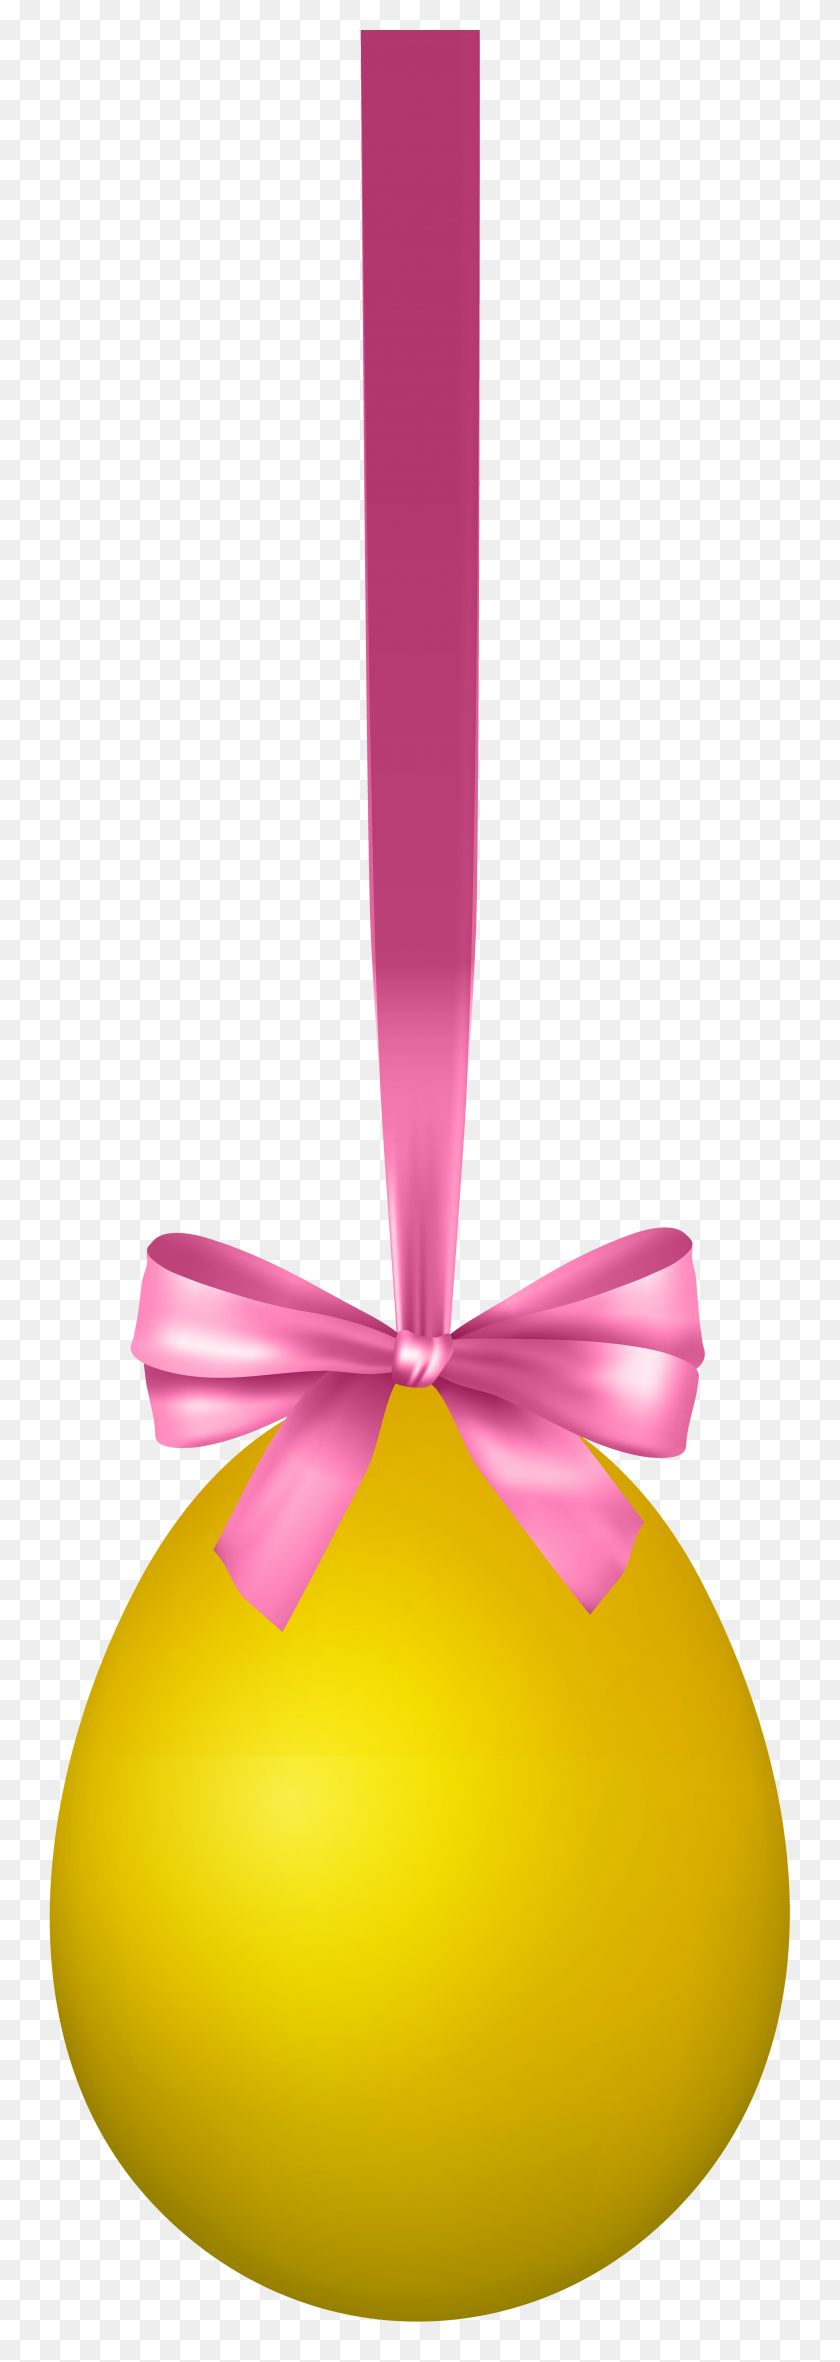 2710x8000 Желтое Подвесное Пасхальное Яйцо С Бантом Прозрачное Изображение - Желтый Бантик Клипарт